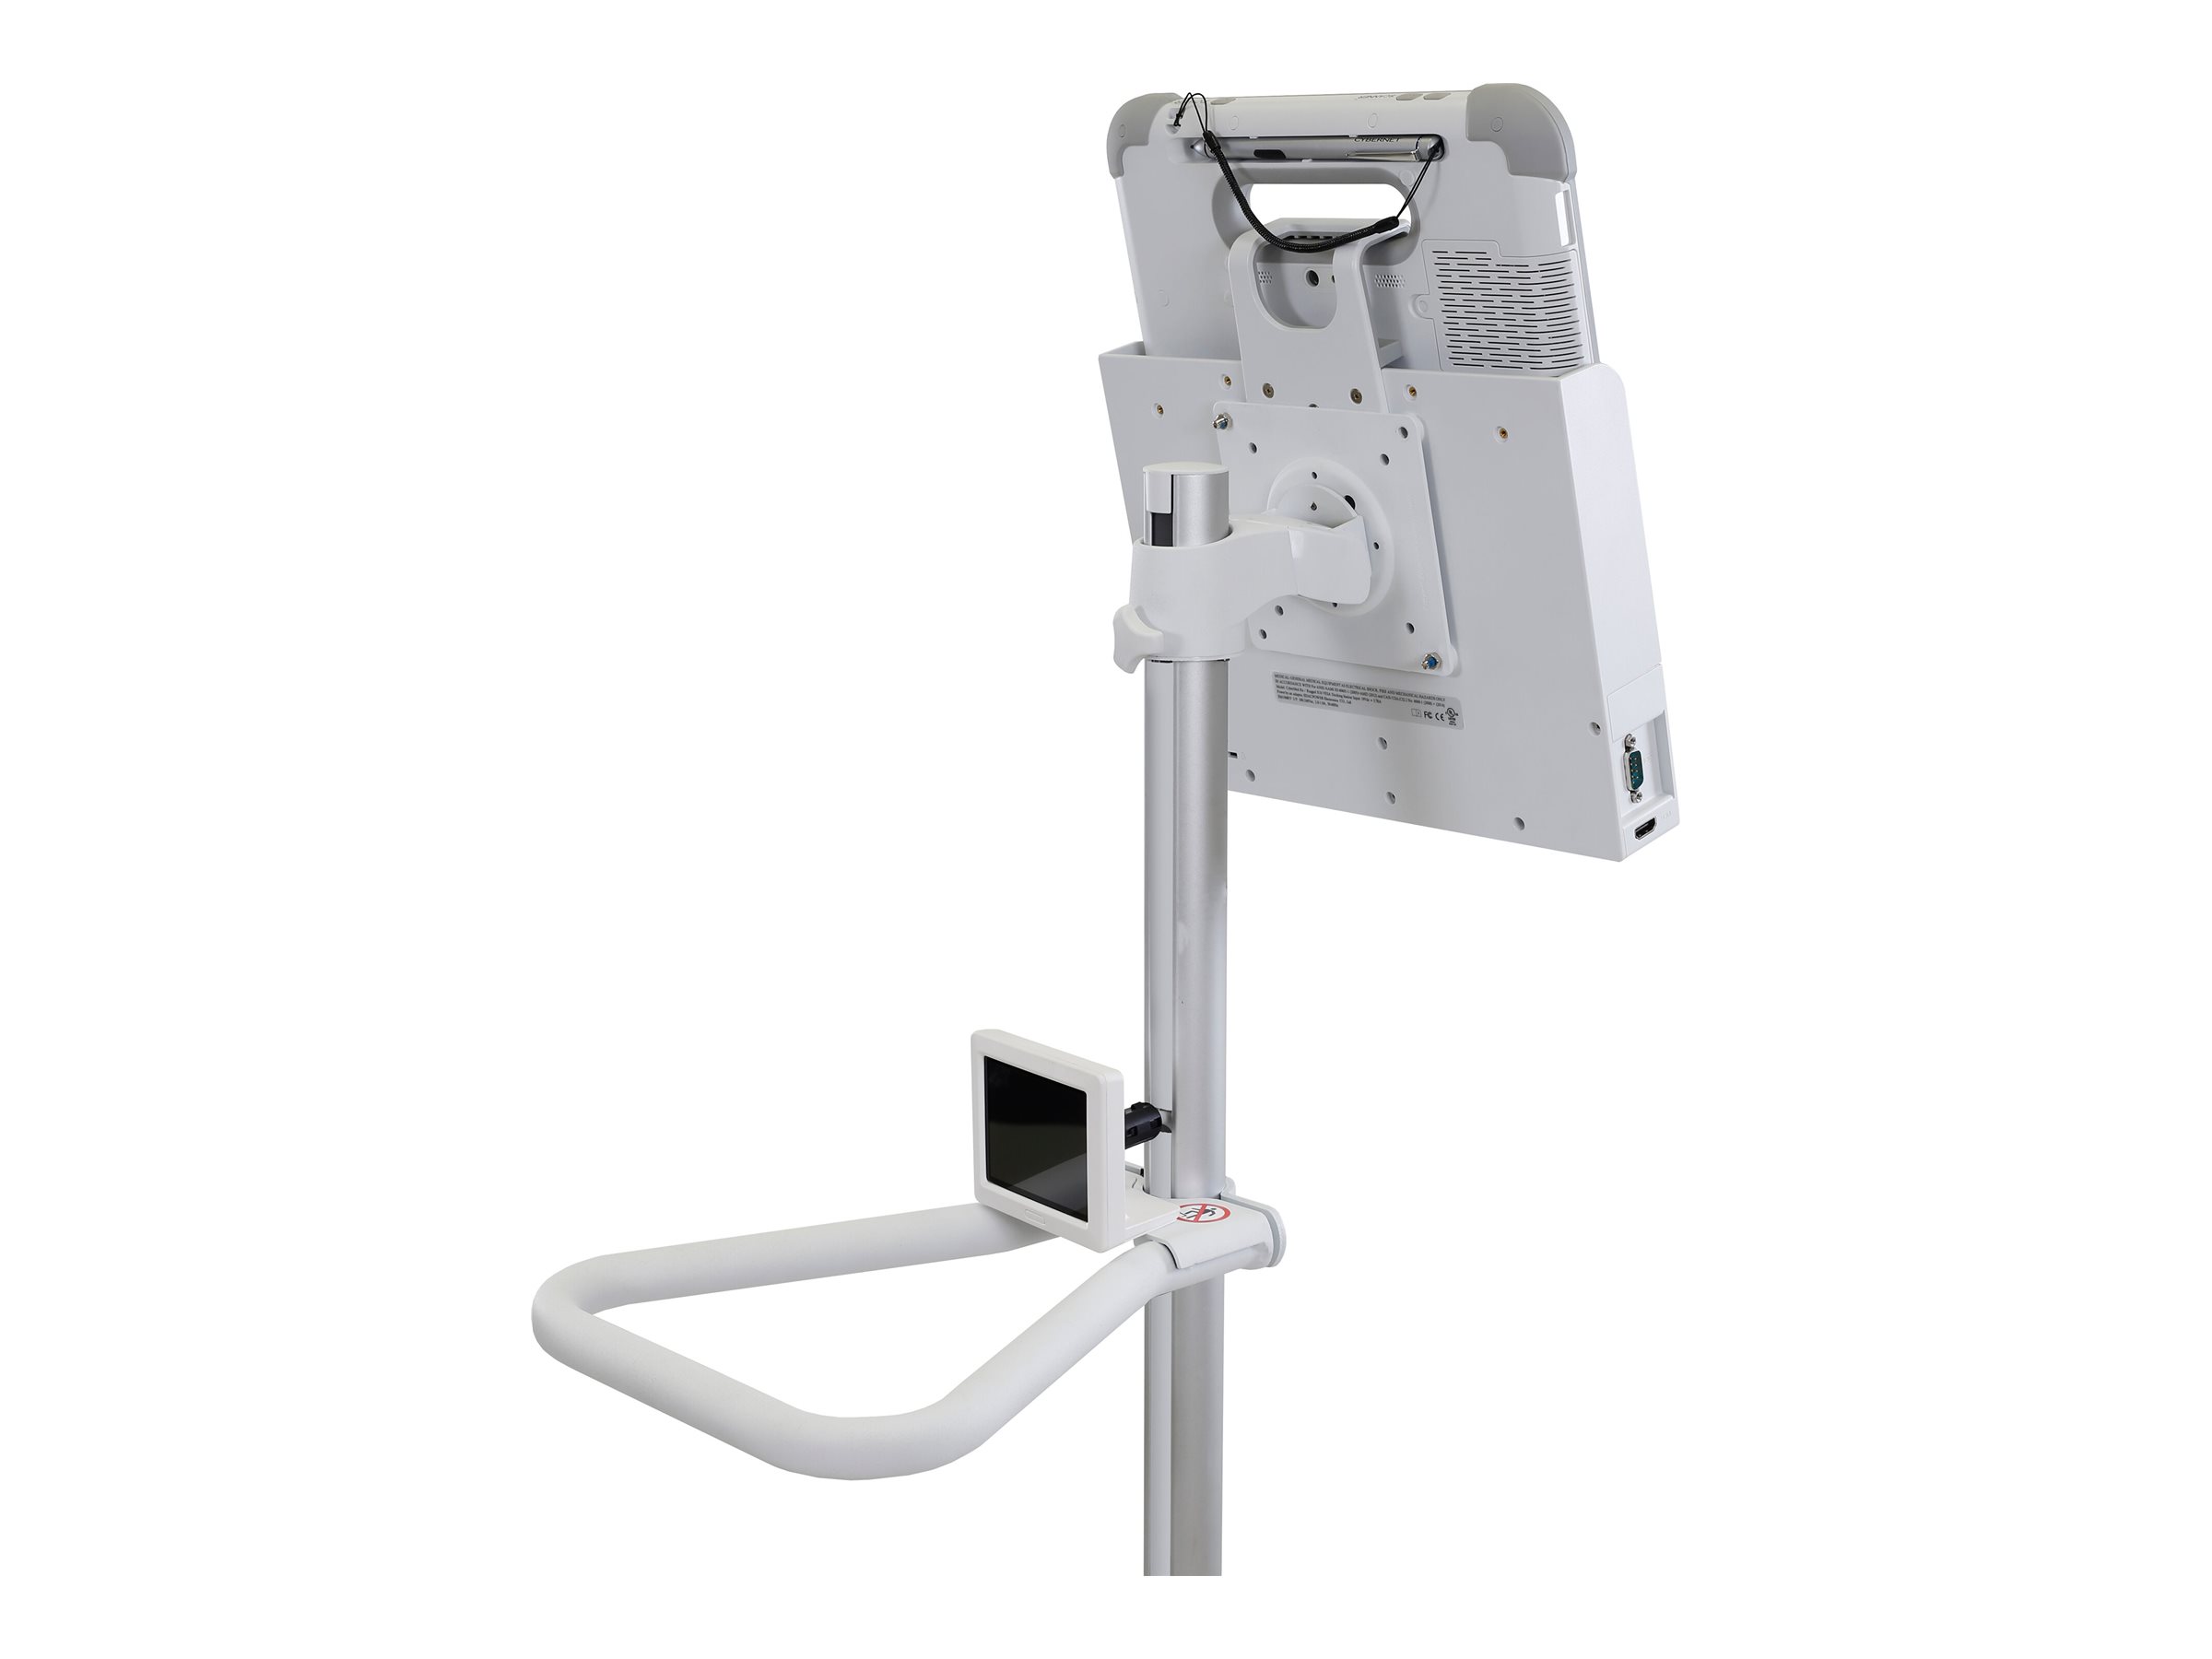 Ergotron Pole Cart - Chariot - pour écran LCD / tablette - blanc brillant - Taille d'écran : jusqu'à 24 pouces - 24-818-211 - Chariots